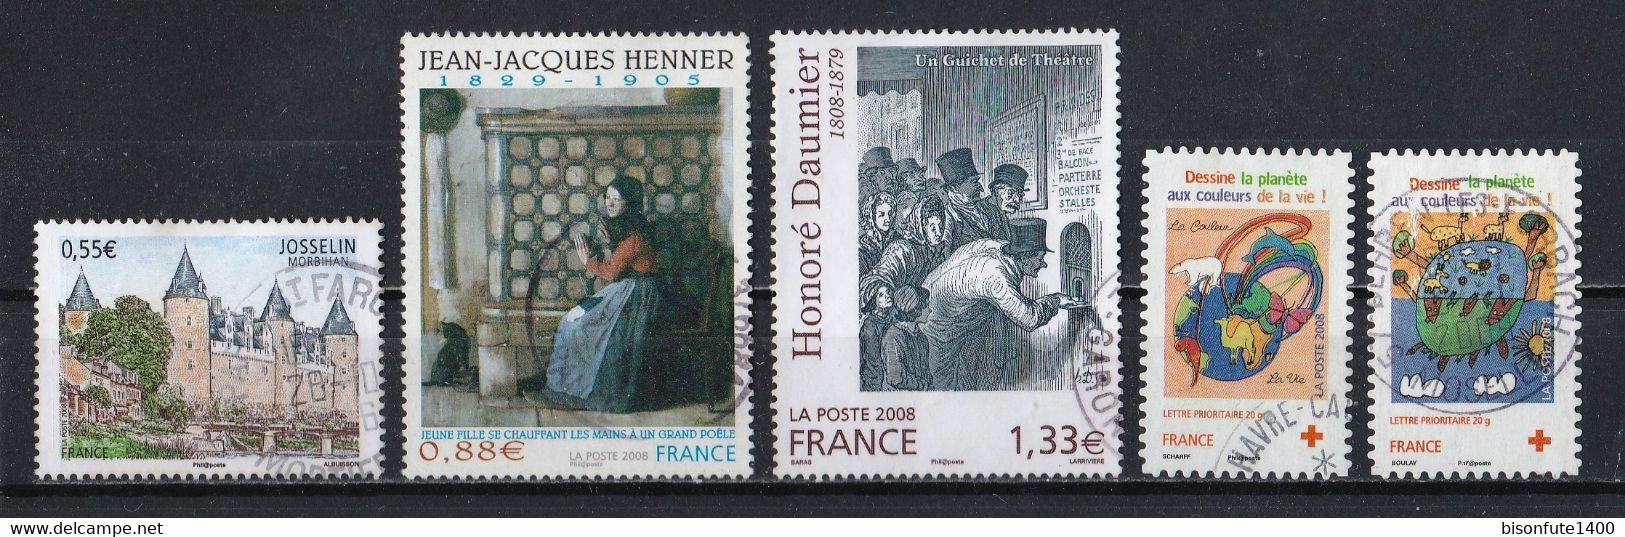 France 2008 : Timbres Yvert & Tellier N° 4281 - 4286 - 4305 - 4306 Et 4307 Avec Oblitérations Rondes. - Gebruikt